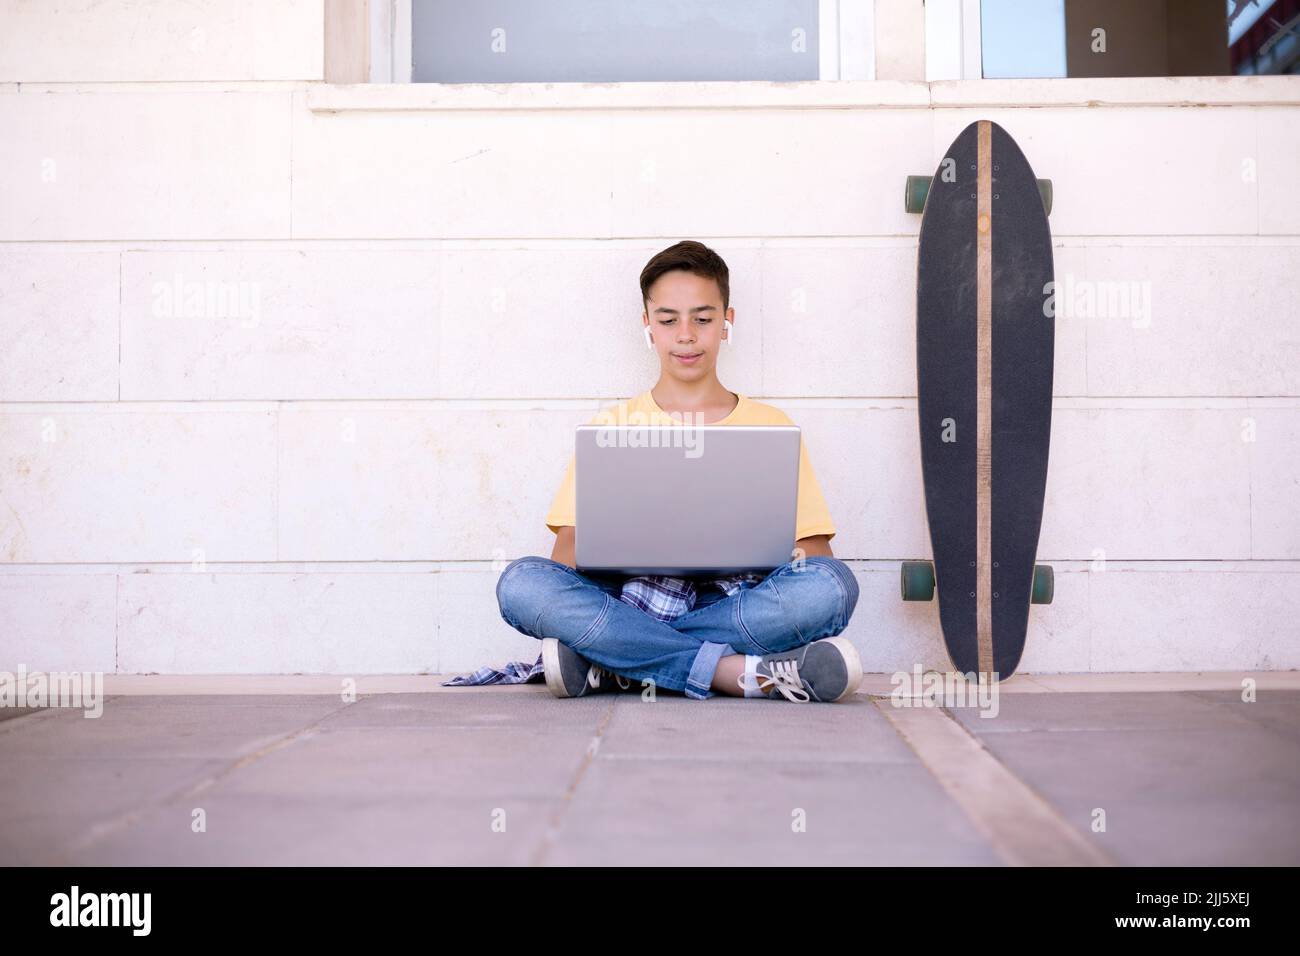 Adolescent du Caucase assis sur le sol à l'aide d'un ordinateur portable. Espace pour le texte. Banque D'Images